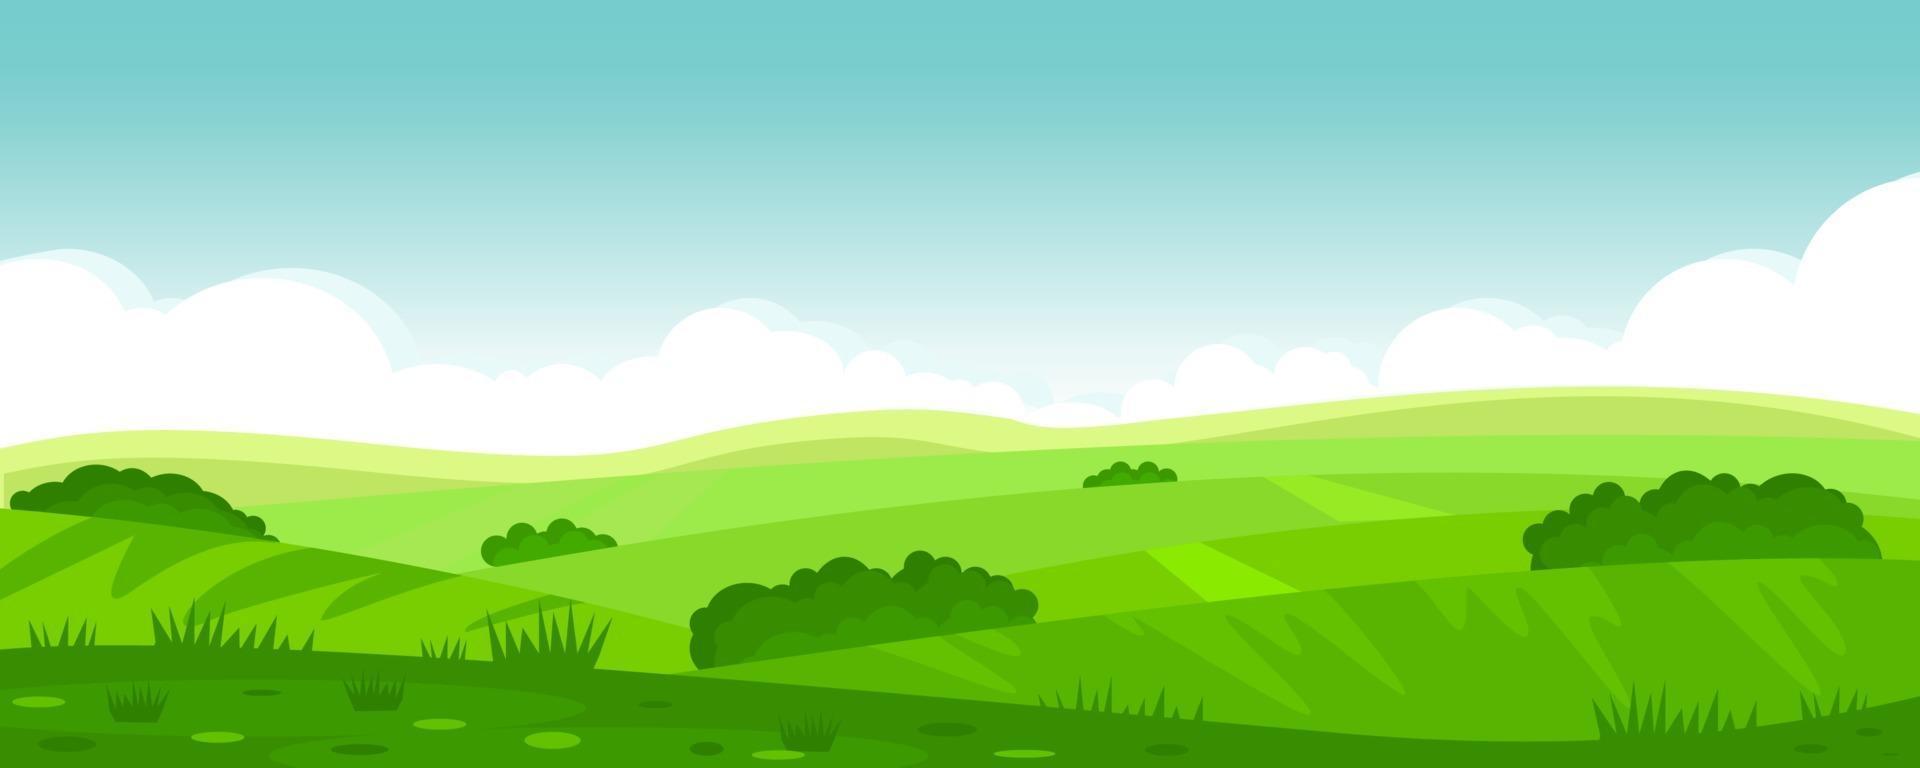 Vektorillustration der schönen Sommerfeldlandschaft, der grünen Hügel, des hellen blauen Himmels der Farbe, des Landes. Hintergrund im flachen Karikaturstil, Fahne. vektor